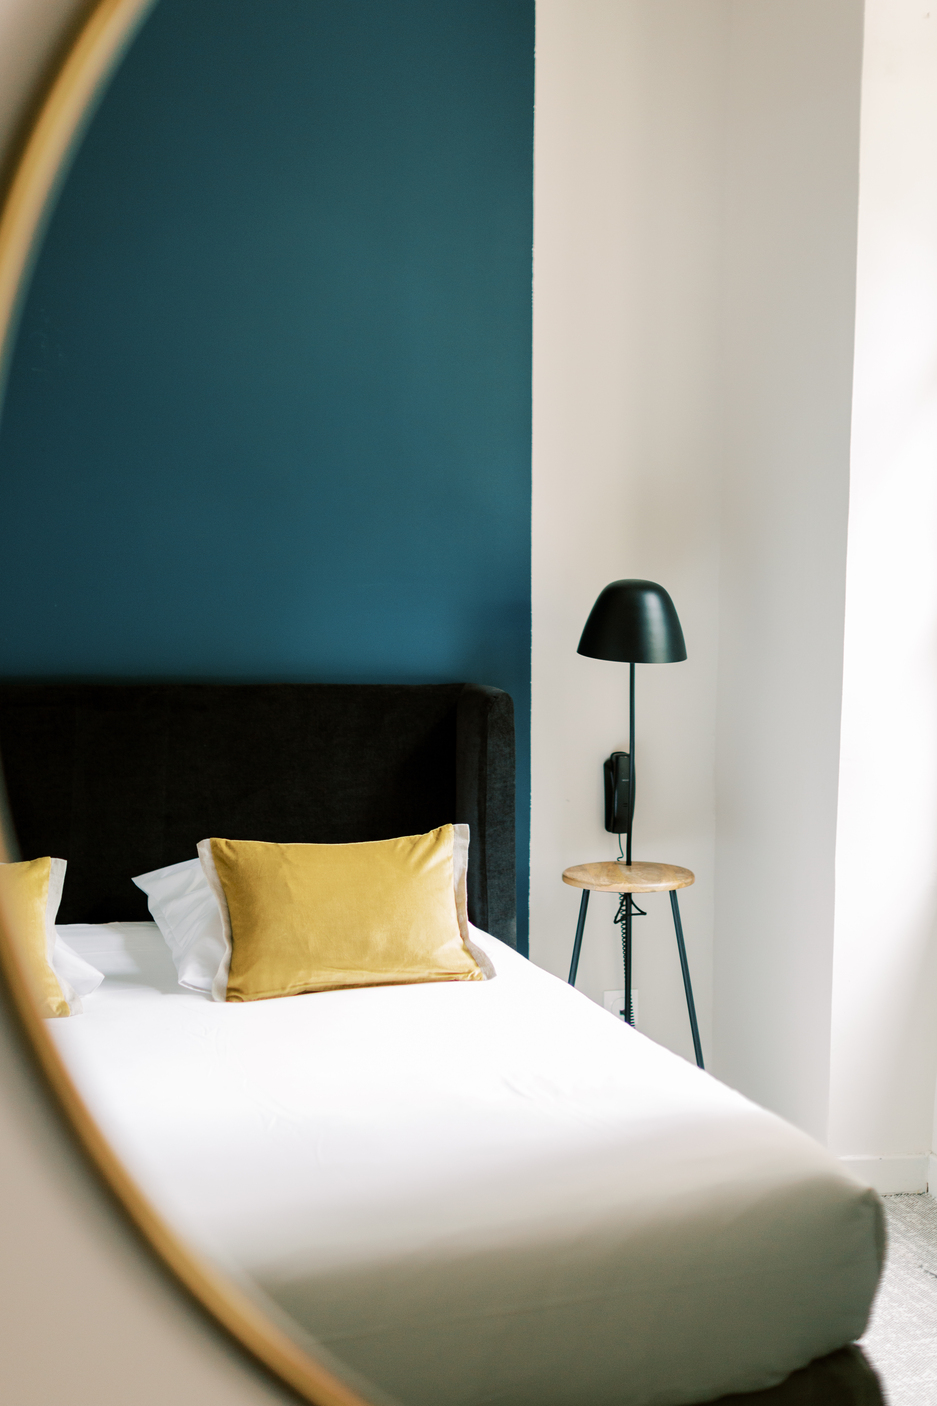 VICTORIA BOUTIQUE HOTEL - chambre supérieure - hotel drome provençale